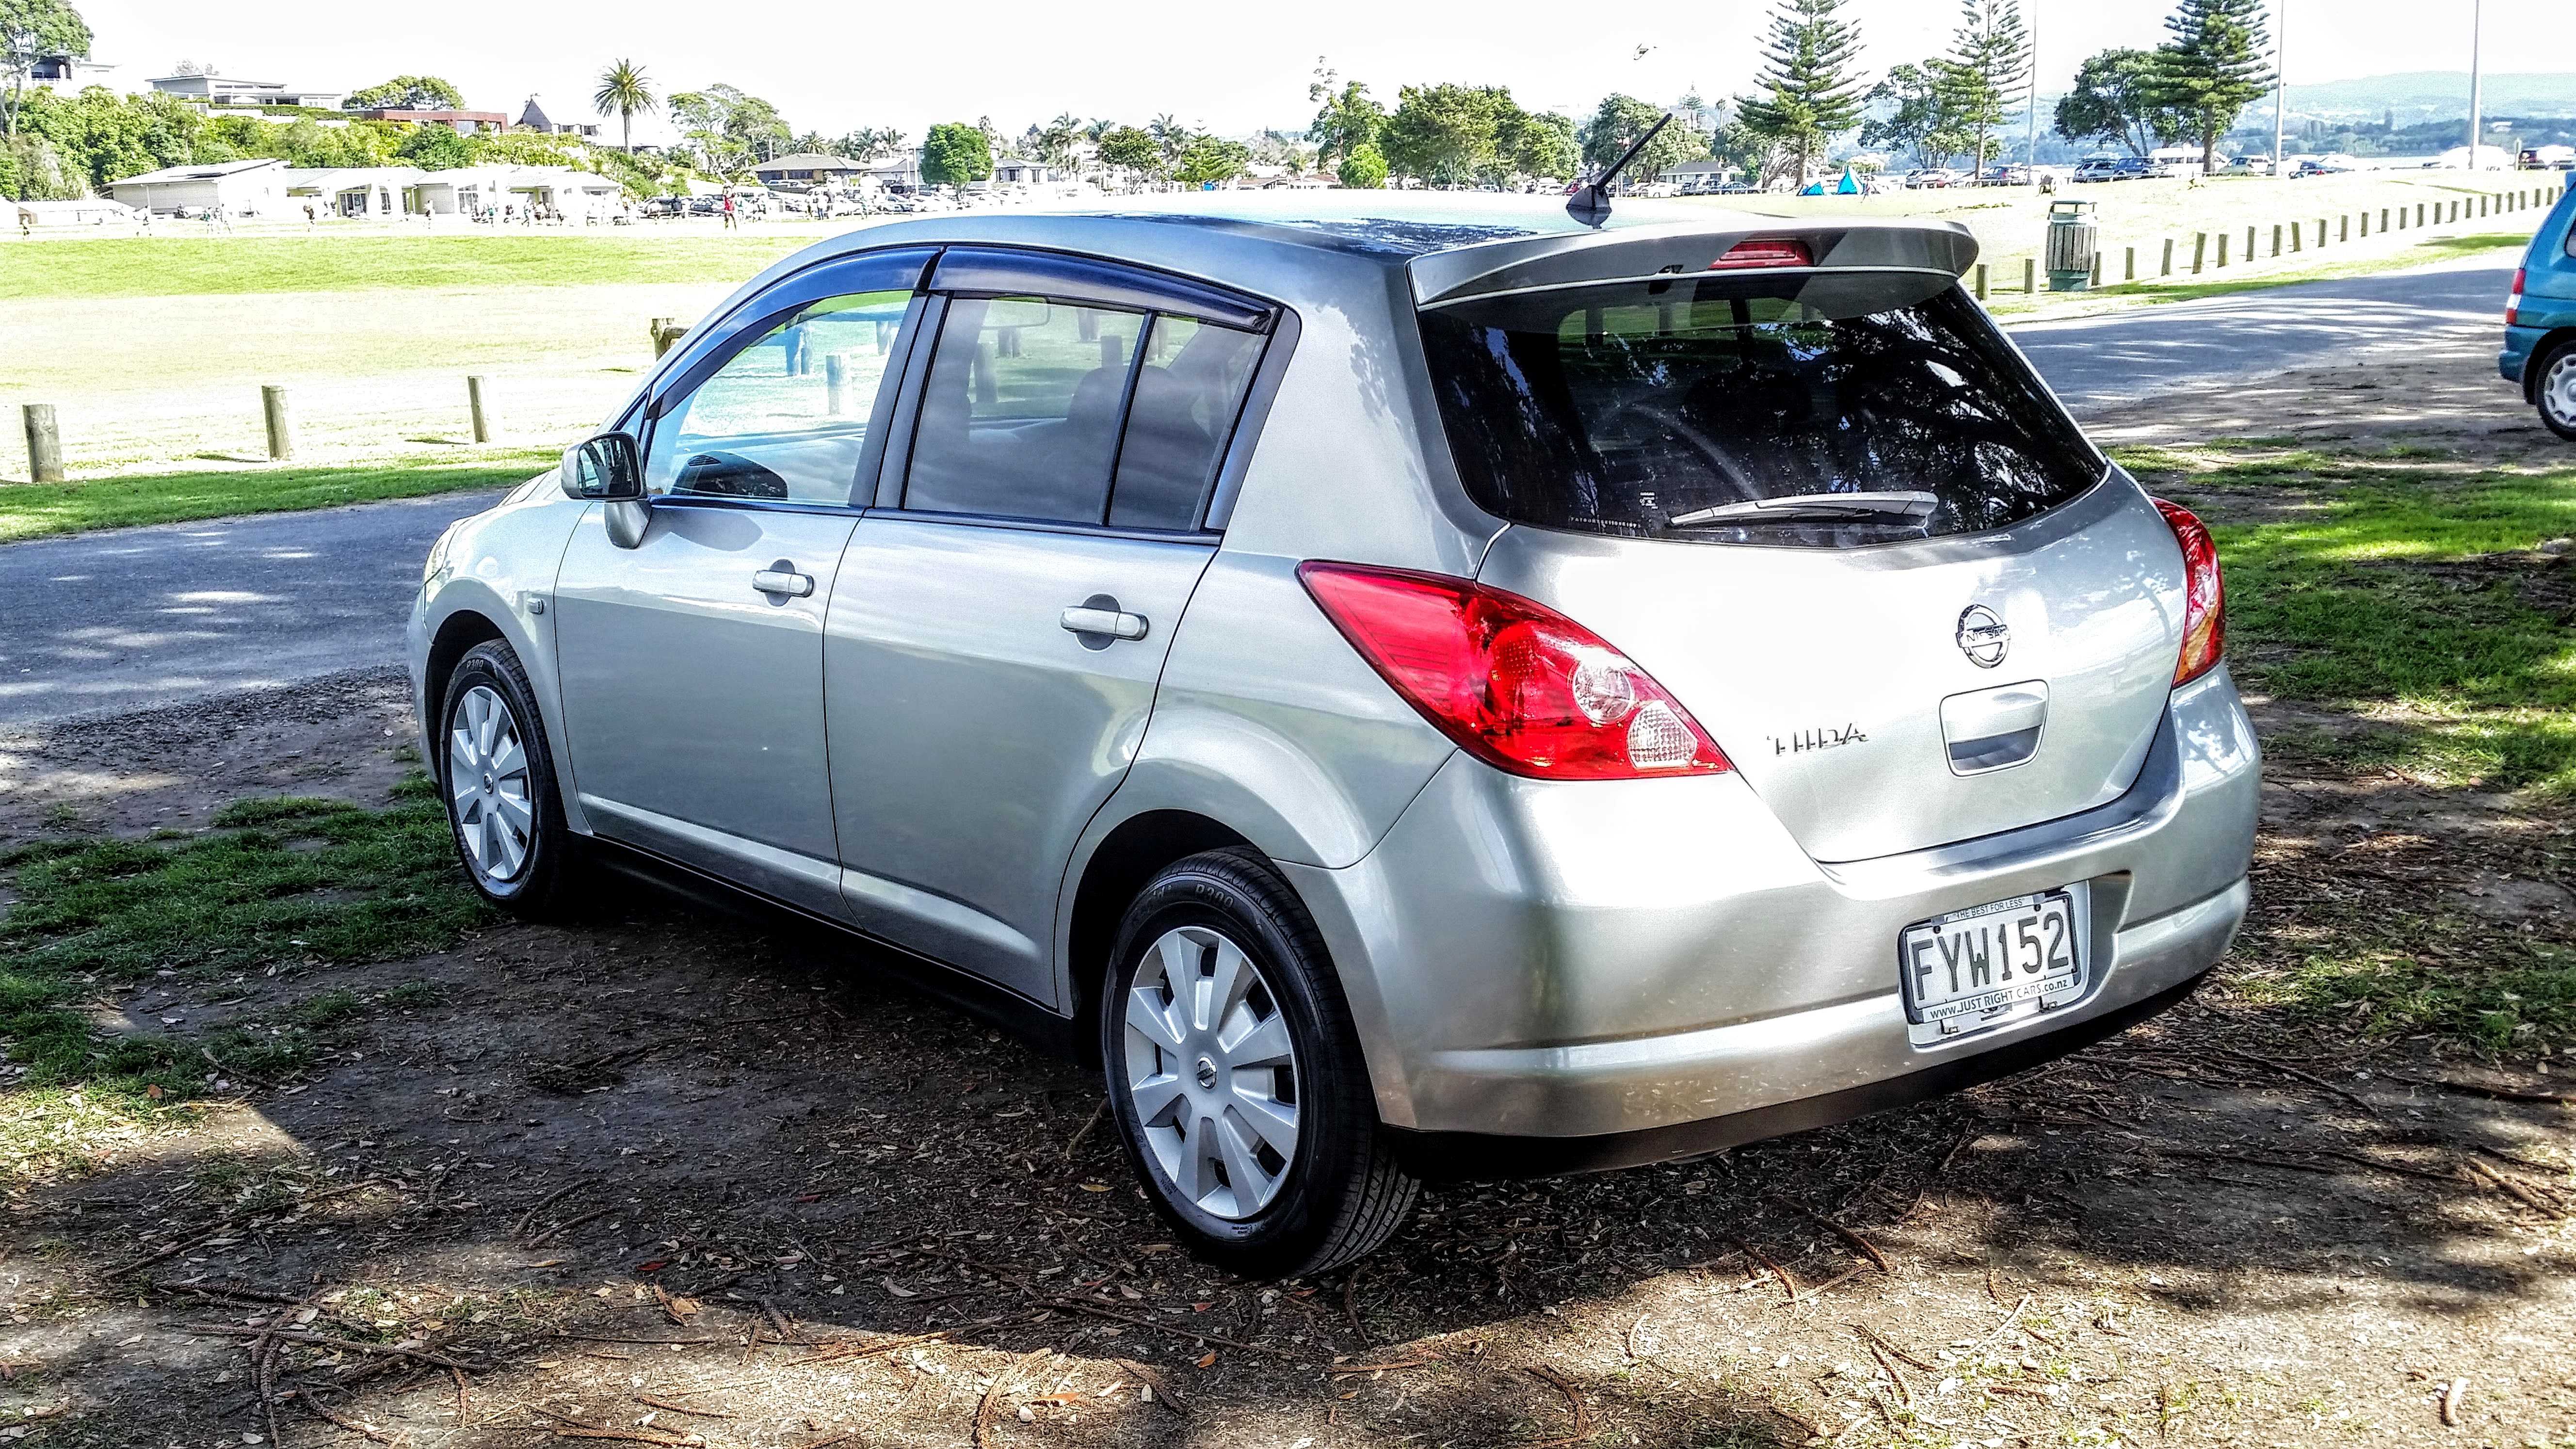 Nissan tiida обзор и фото качественного автомобиля